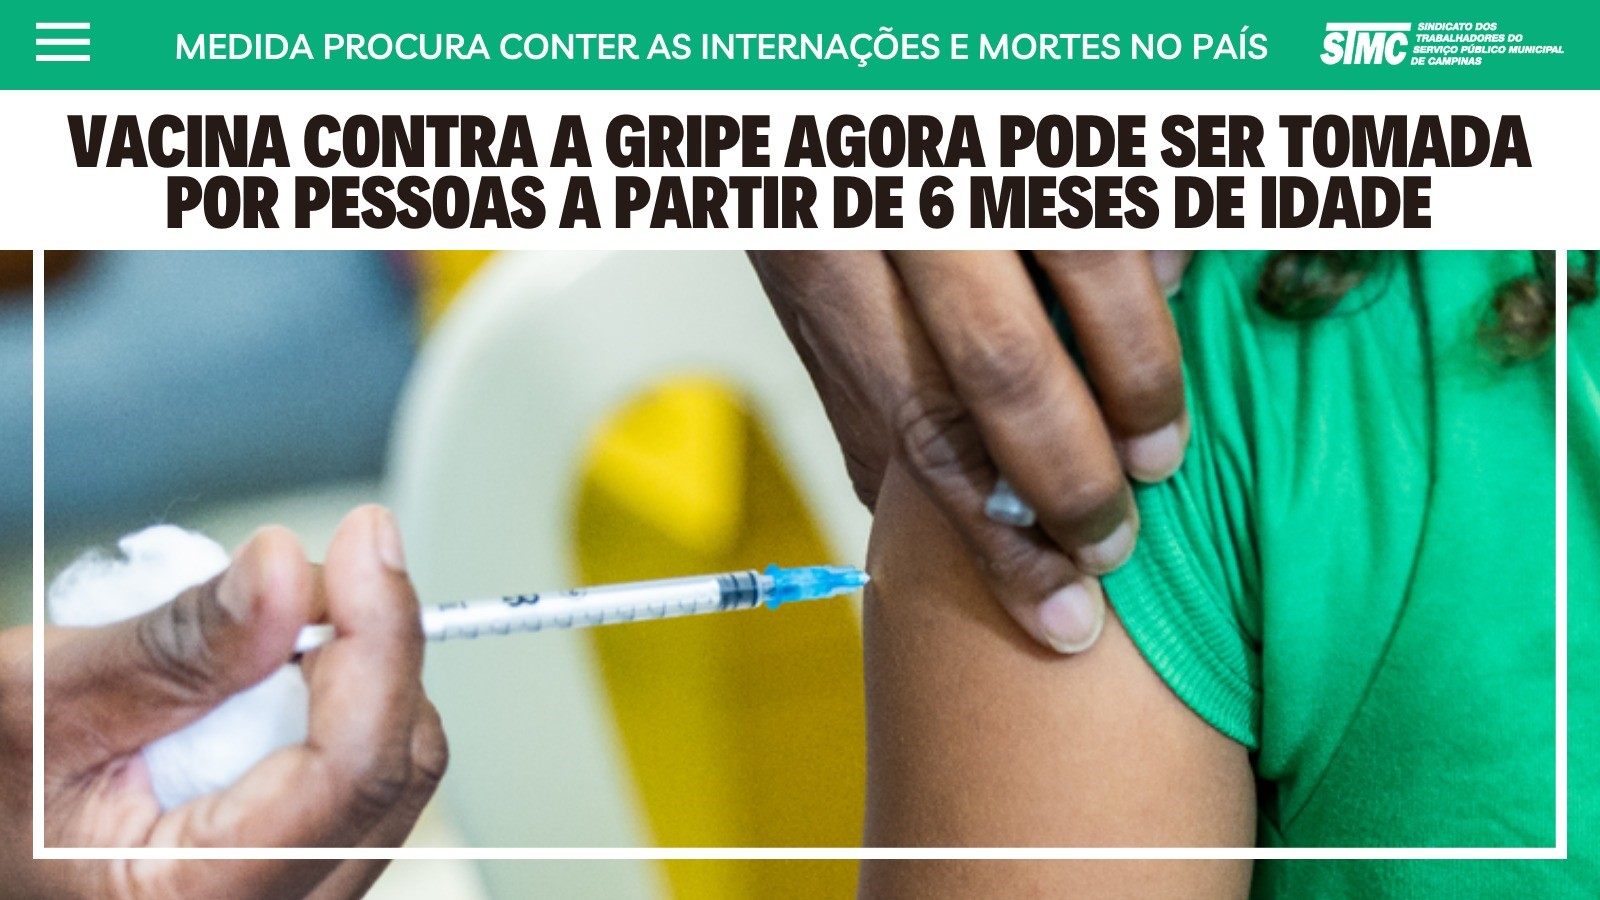 Vacinação contra a gripe é ampliada nos postos de Campinas para toda a população a partir dos 6 meses de idade. Vacine-se!